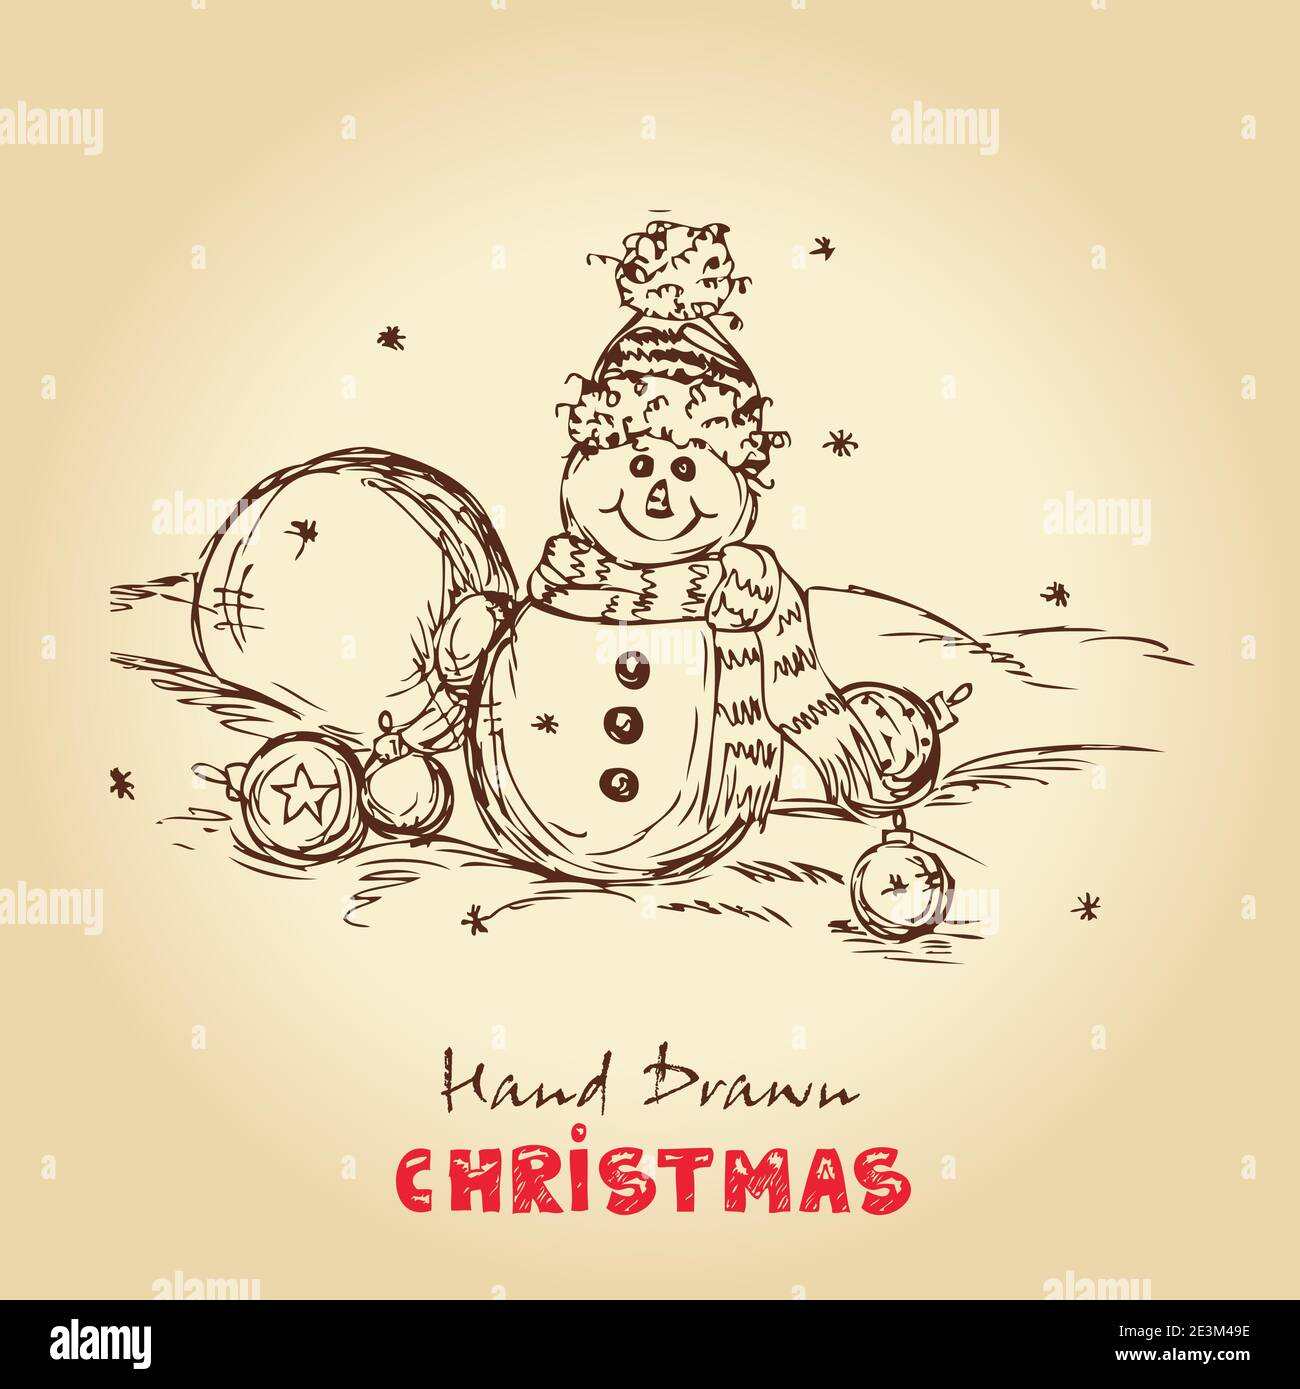 Weihnachten handgezeichnete Vektor-Illustration mit Schneemann und Weihnachtskugeln, für Weihnachten Design. Stock Vektor